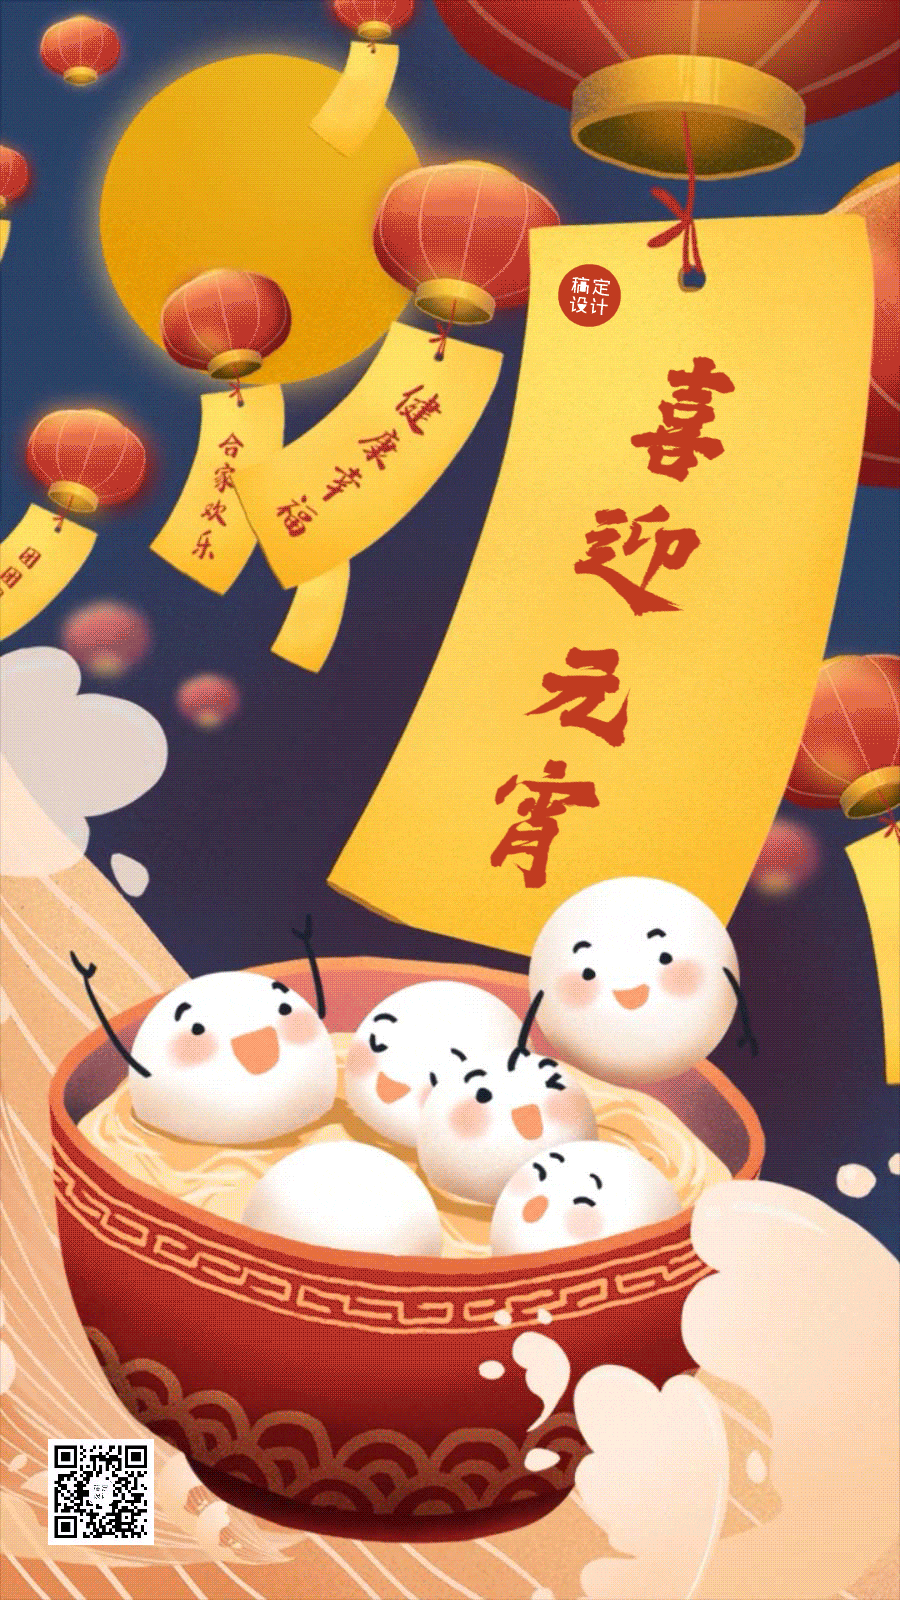 通用元宵节节日祝福卡通动态手机海报